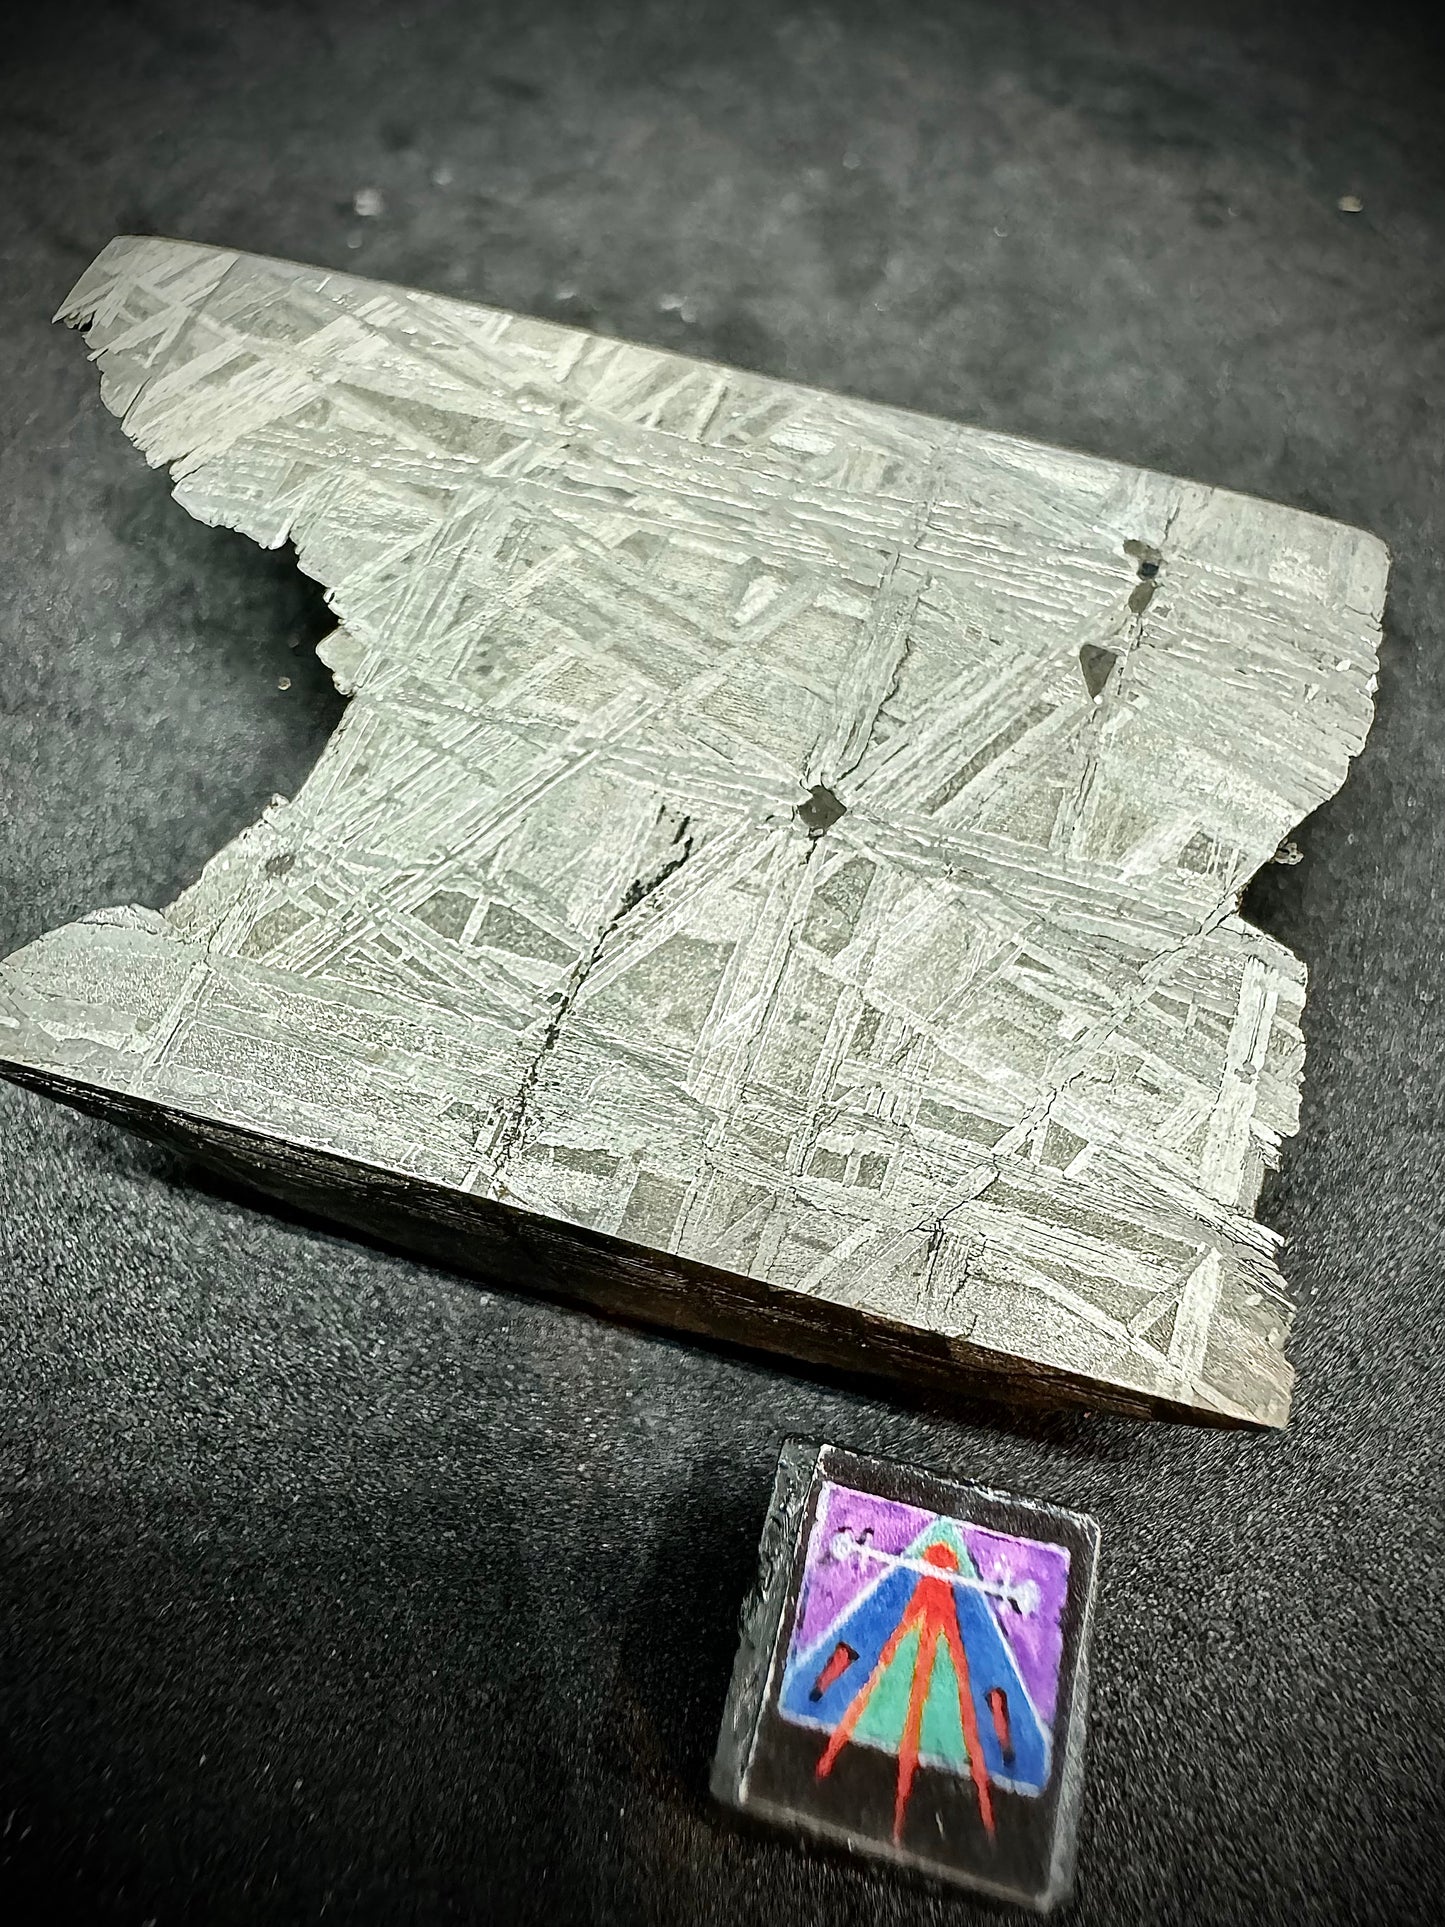 Muonionalusta Iron Meteorite - End Piece - 146.5g